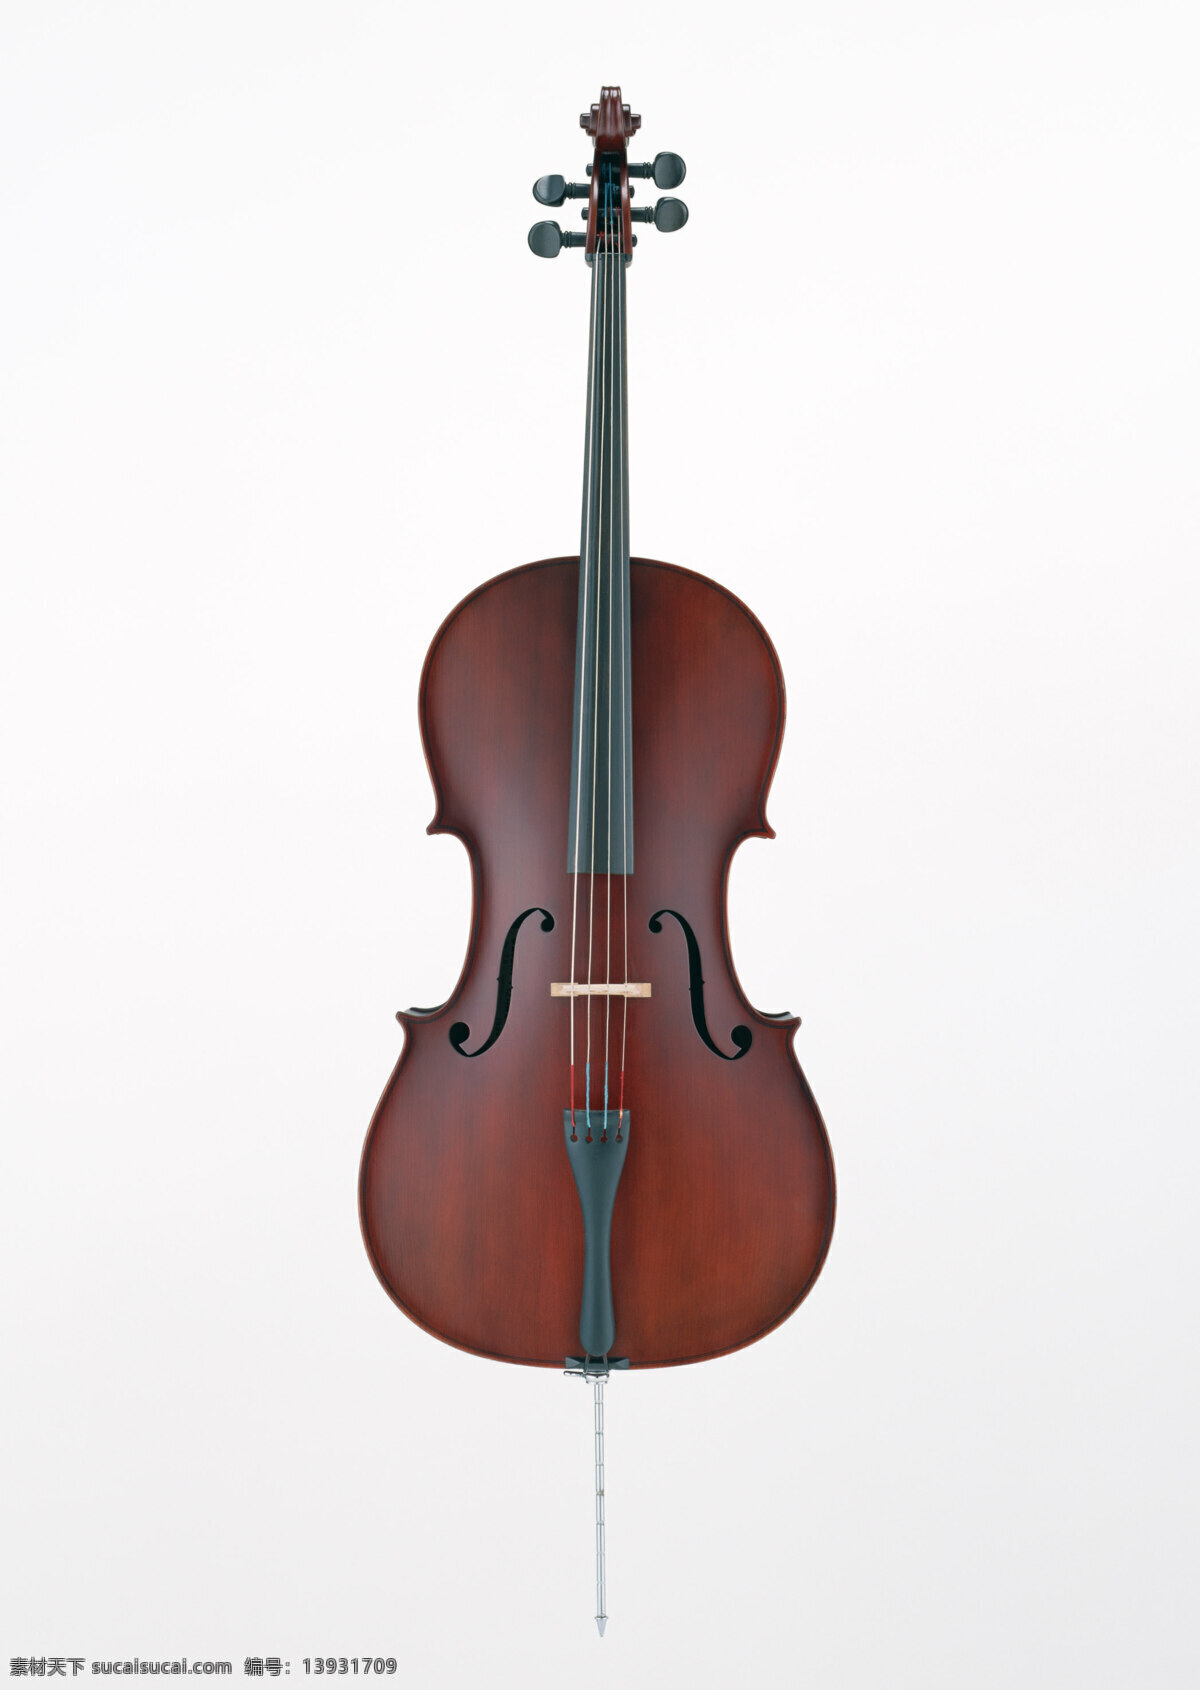 大提琴 弦乐器 乐器 西洋乐器 文化艺术 舞蹈音乐